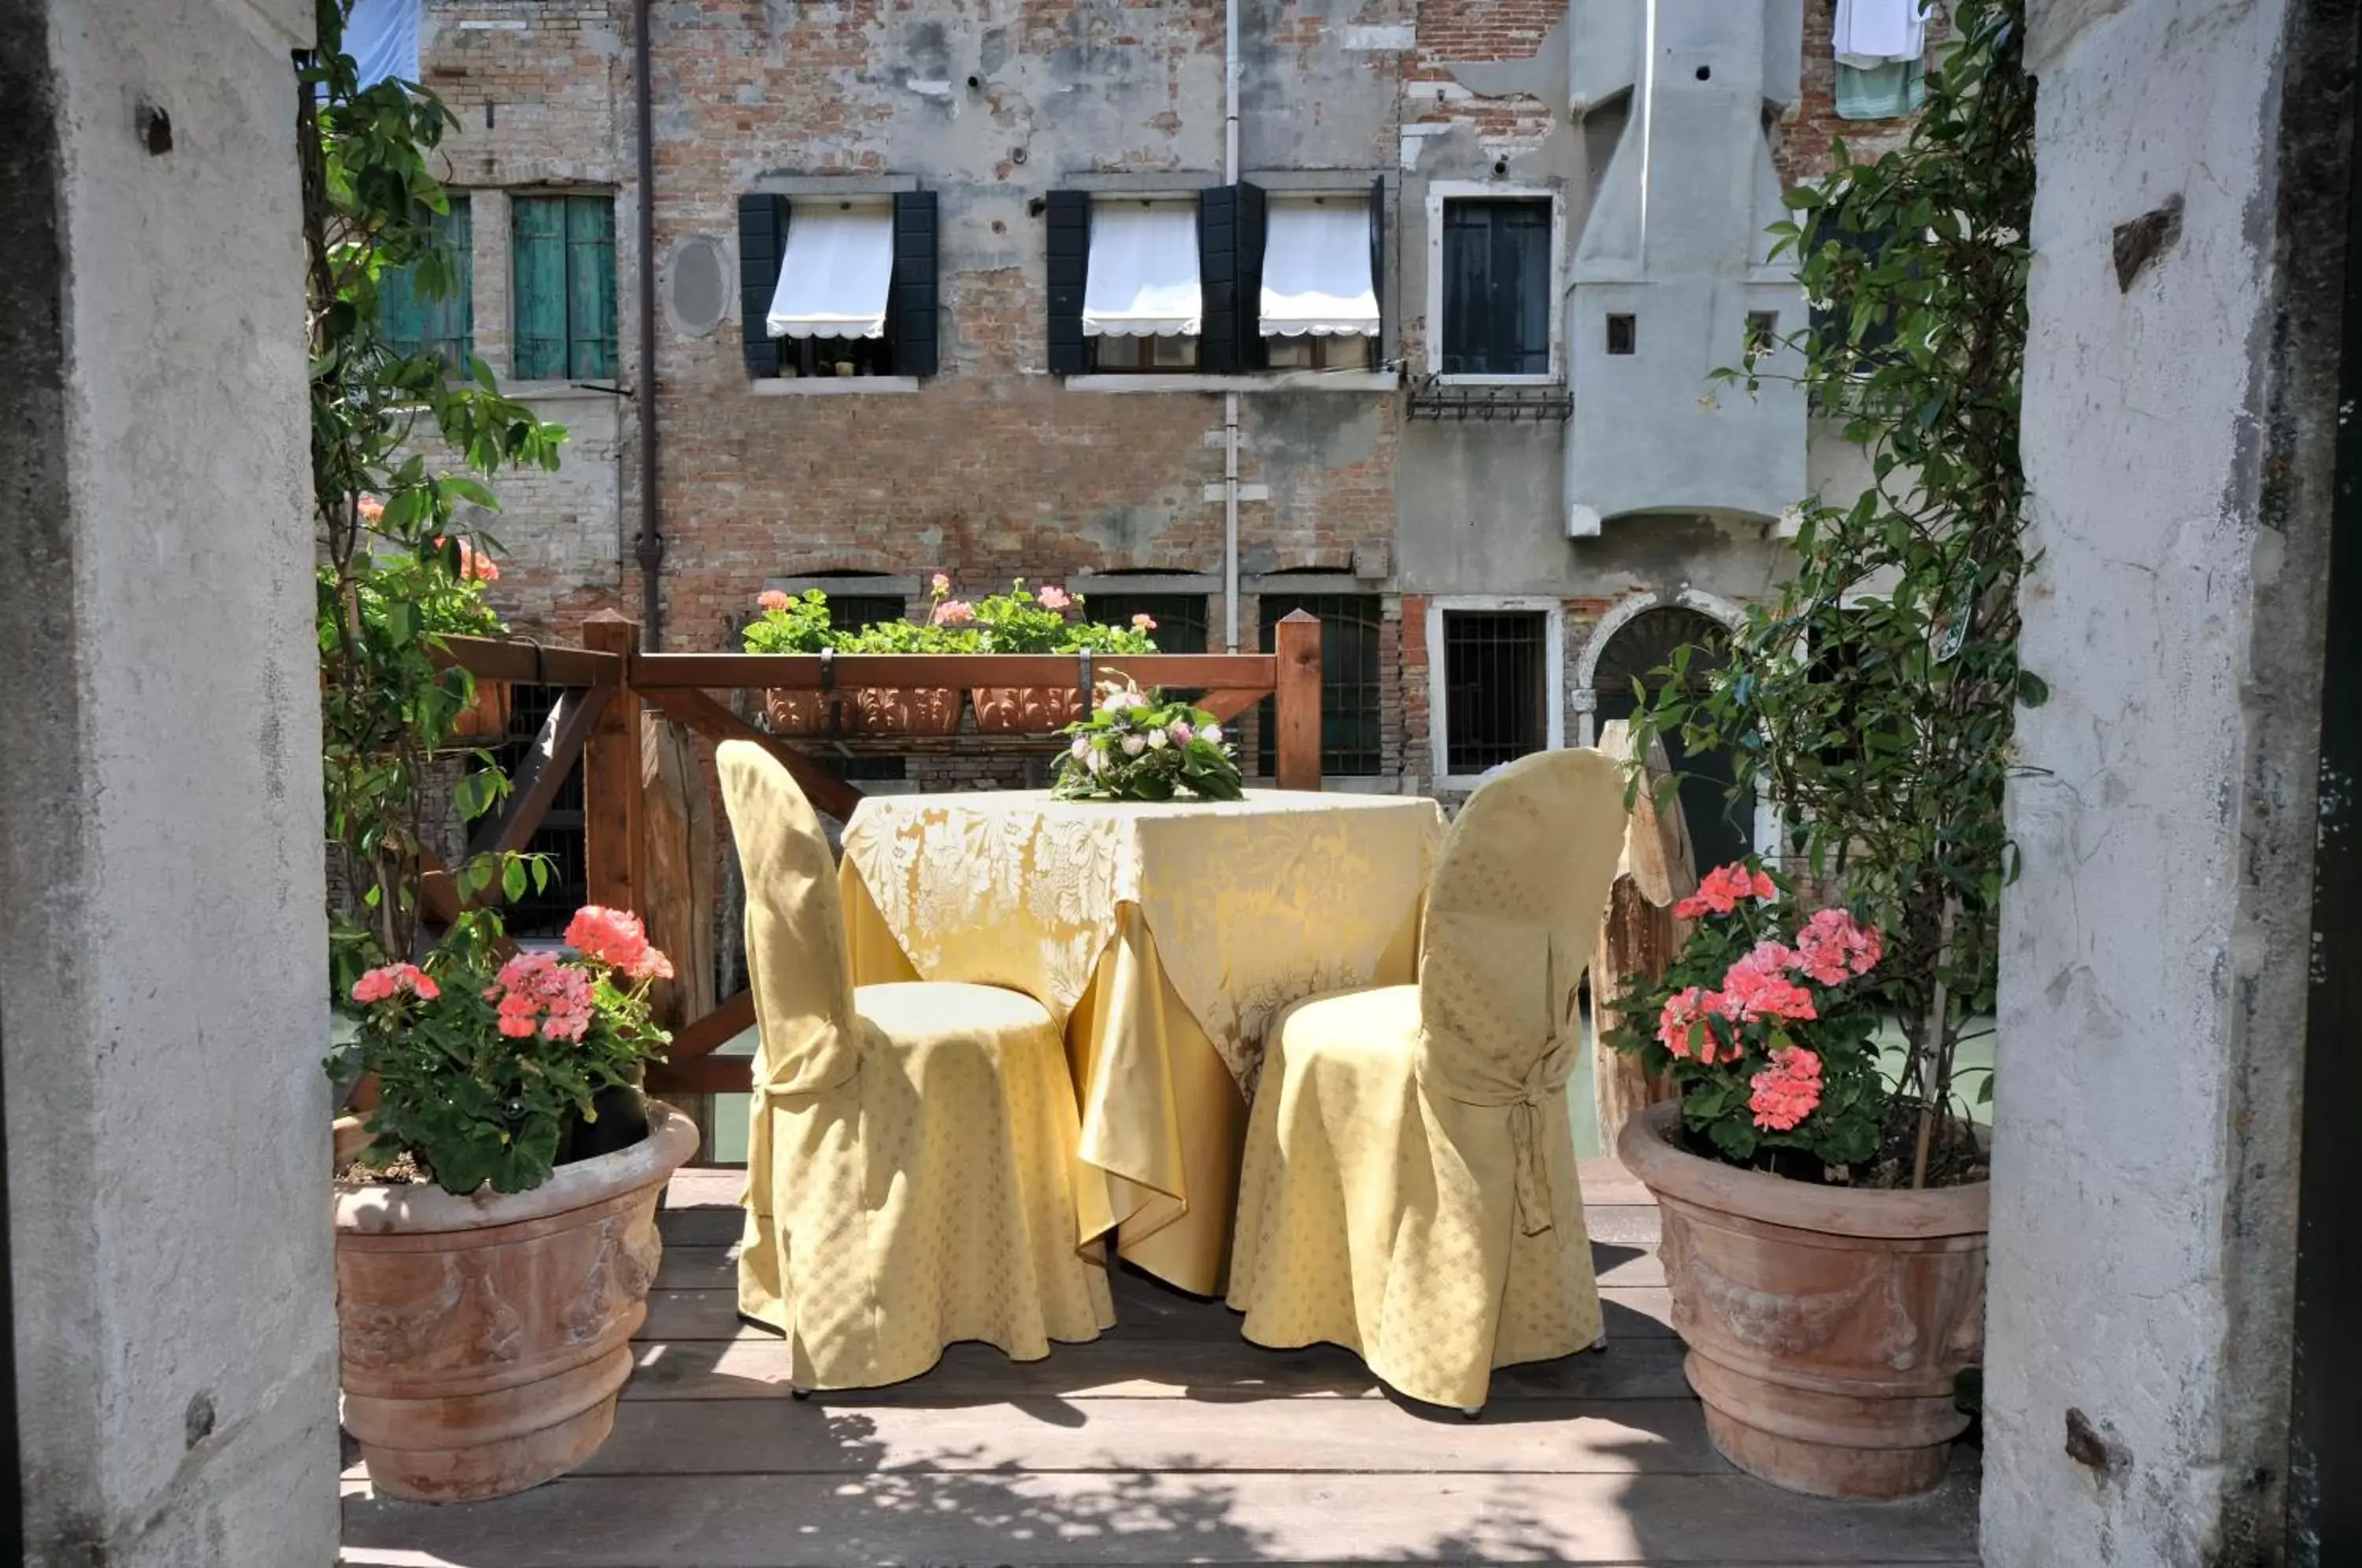 Balcony/Terrace, Banquet Facilities in Alla Vite Dorata